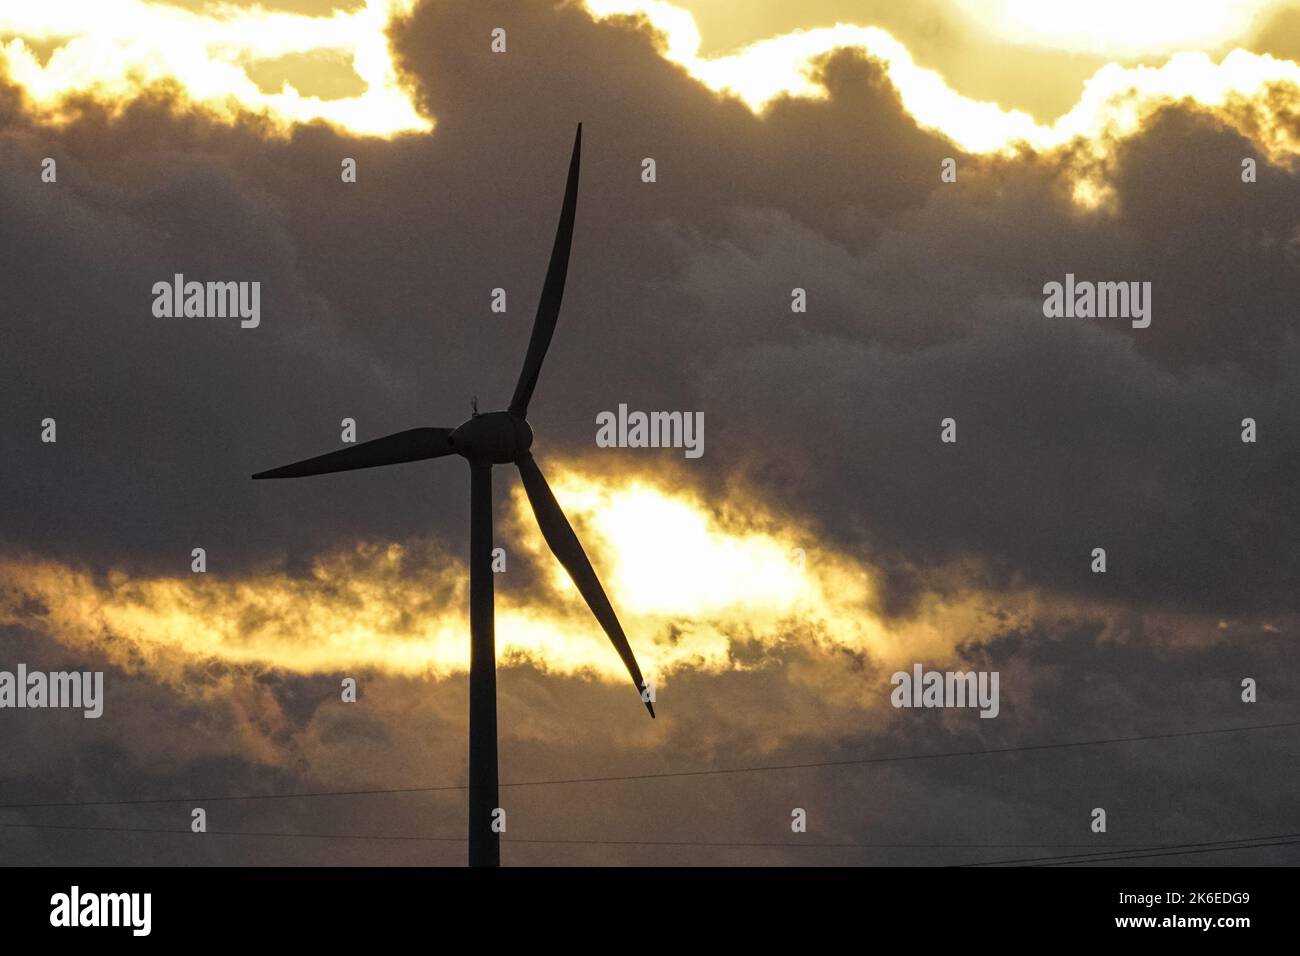 Wind turbine blades on stormy sky background Stock Photo